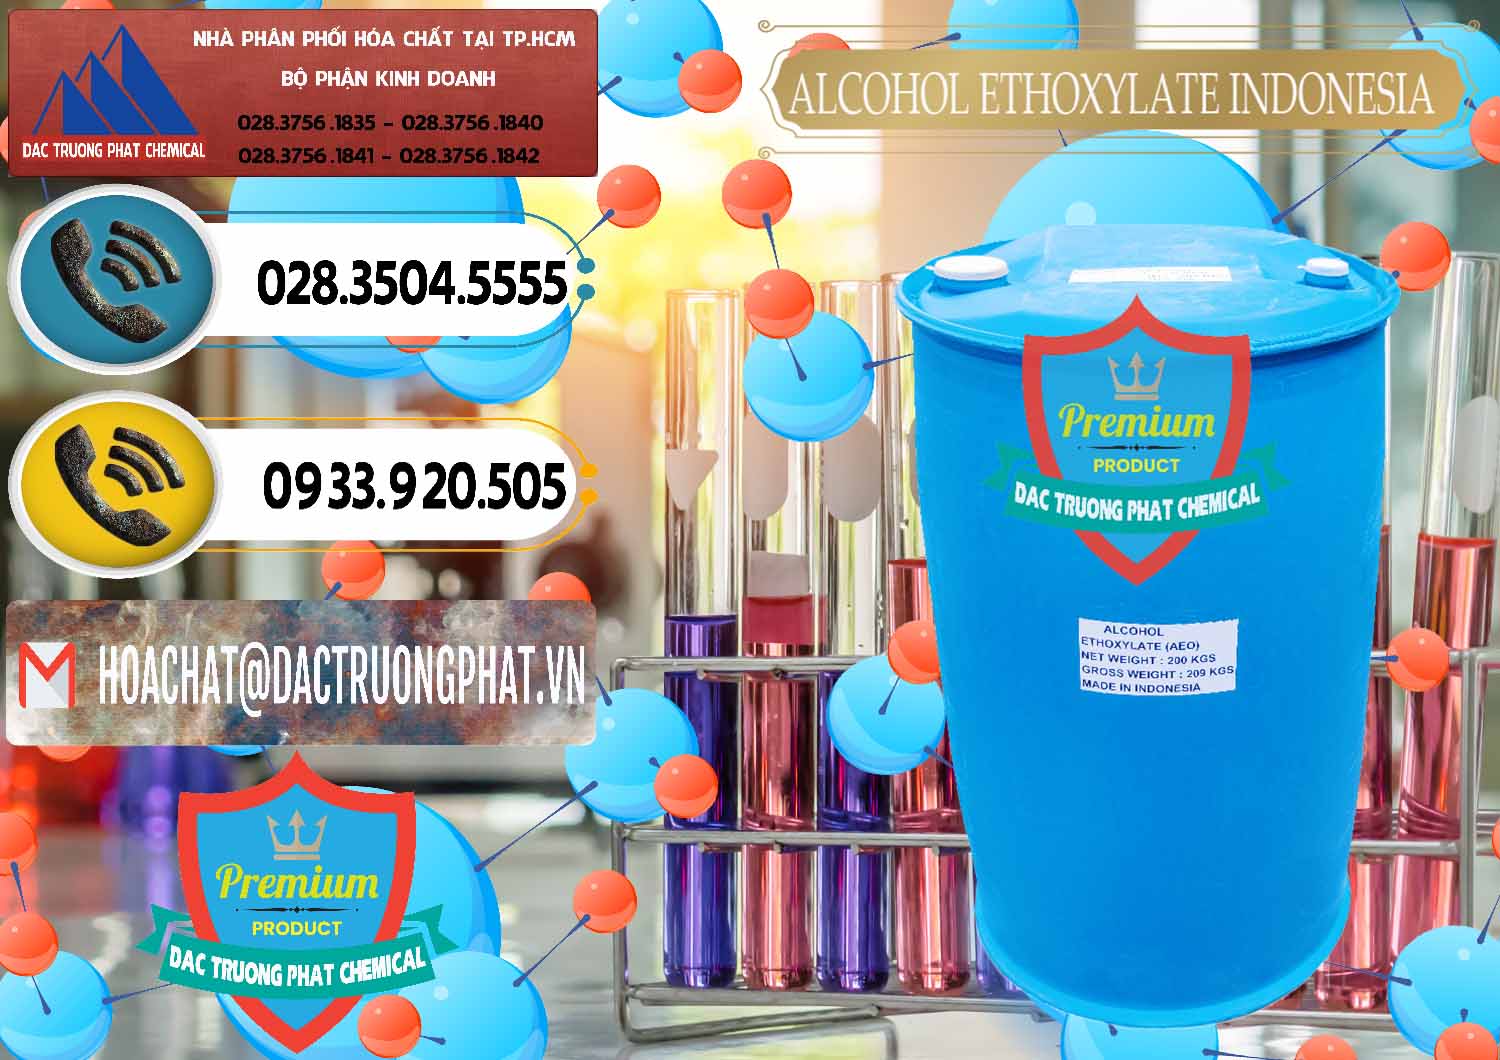 Nơi chuyên cung ứng - bán Alcohol Ethoxylate Indonesia - 0308 - Công ty cung cấp & phân phối hóa chất tại TP.HCM - hoachatdetnhuom.vn